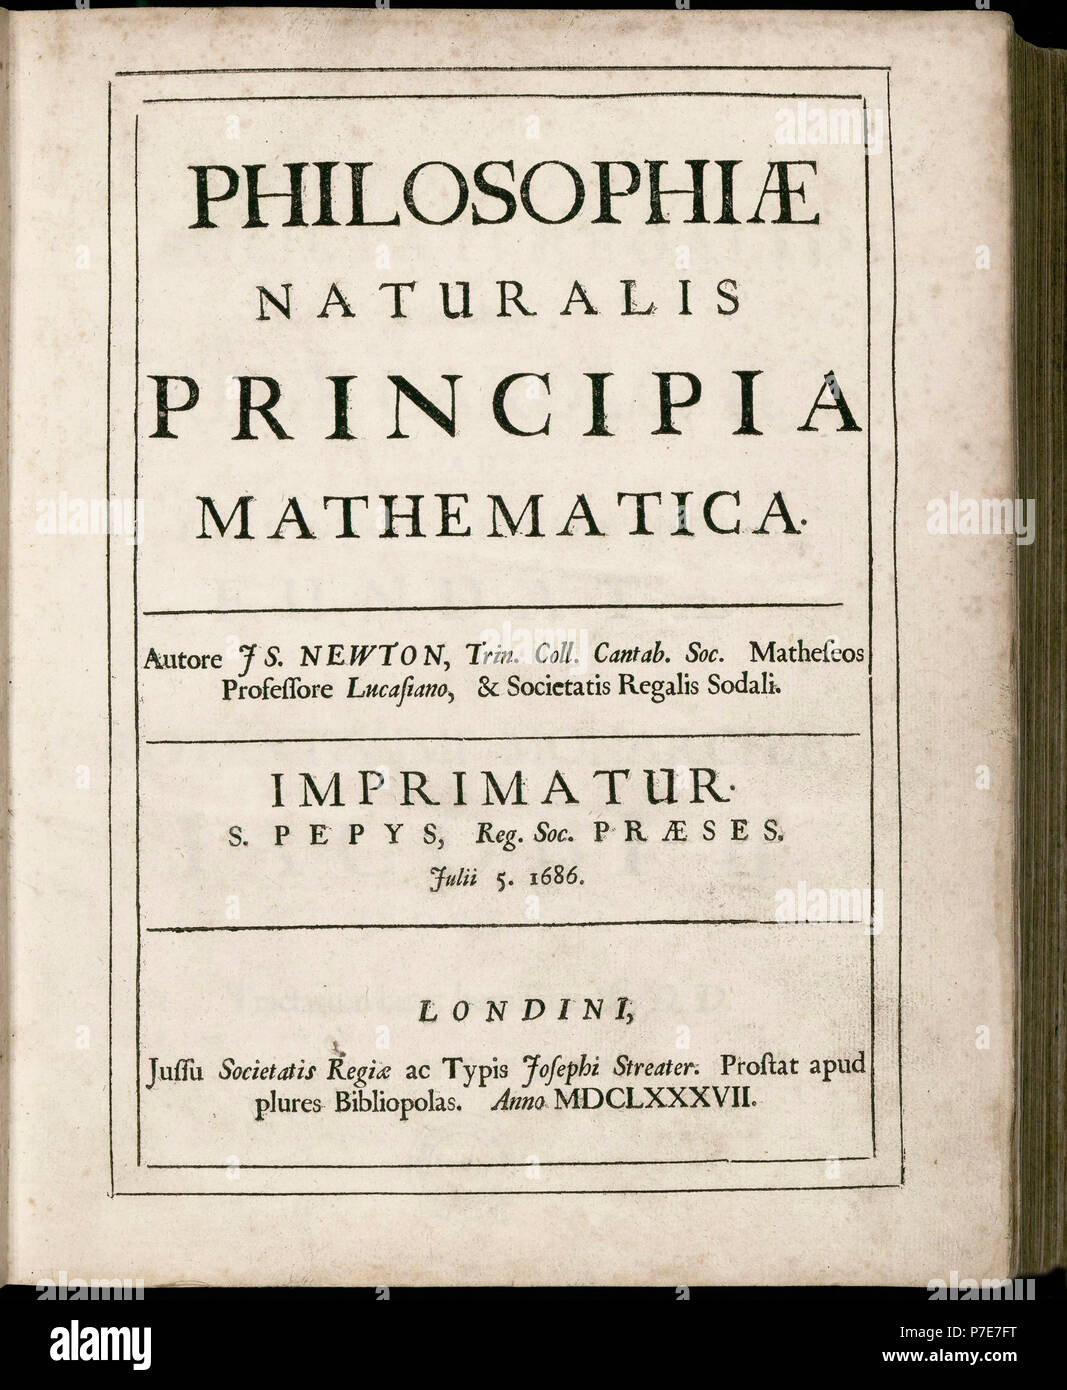 Philosophiae Naturalis Principia Mathematica, de Isaac Newton. (Los principios matemáticos de la filosofía natural). Título de página de la primera edición del 5 de julio de 1687. Foto de stock